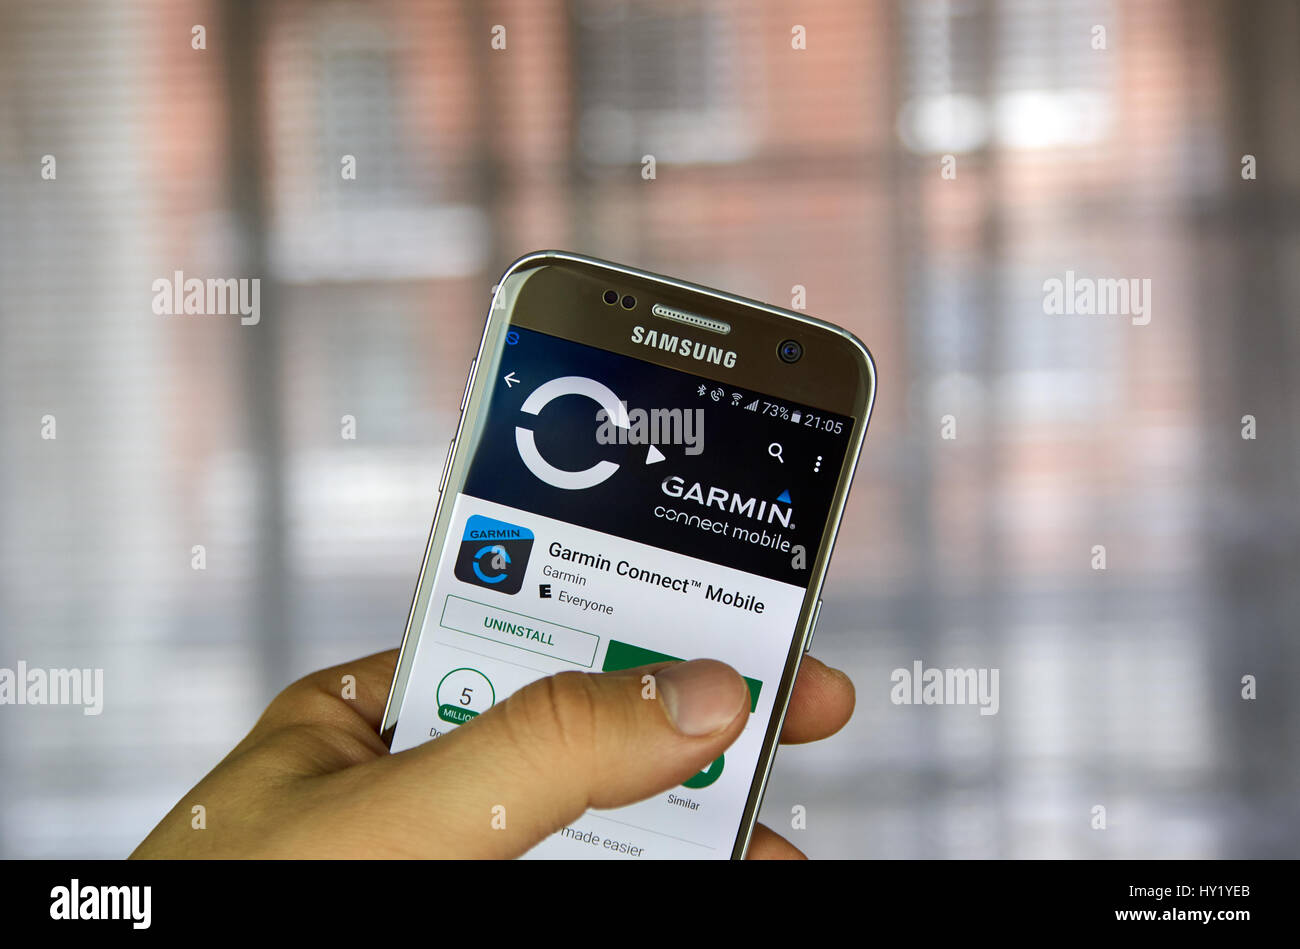 MONTREAL, Canada - 10 Marzo 2017 : Garmin Connect Mobile App su Samsung s7 schermo. L'applicazione è progettata per aiutare gli utenti a tenere traccia del loro activitie Foto Stock